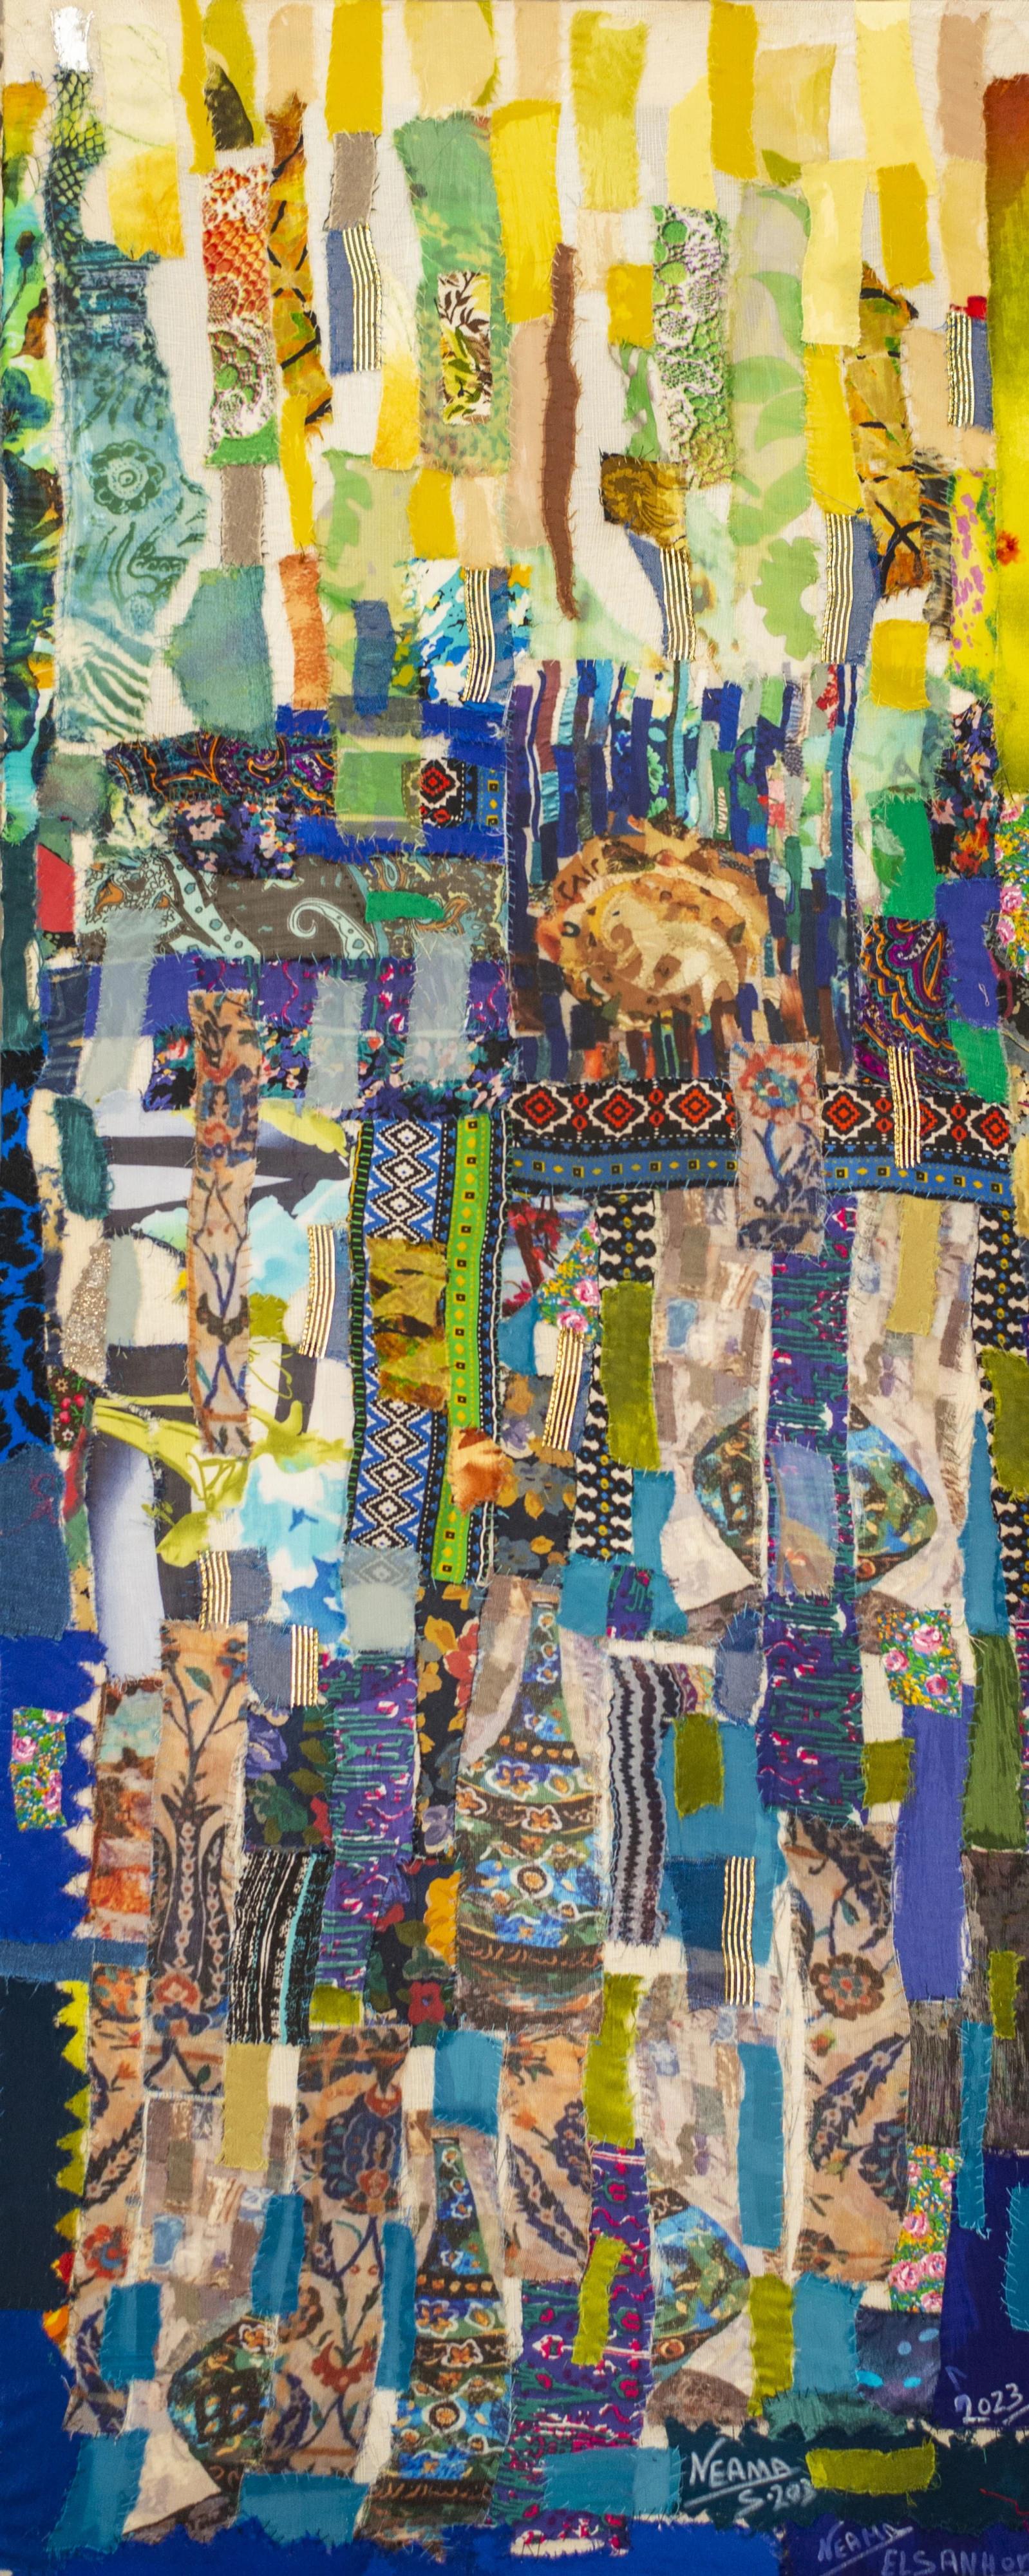 "Das neue Zeitalter" Textilmalerei 43" x 18" Zoll von Neama El Sanhoury

Medium: Stoffapplikation auf Leinen

Reihe "Fragmente der Zeit": 
Letztlich wird El Sanhourys Werk in einer durch und durch modernen Verfassung betrachtet und generiert, die an